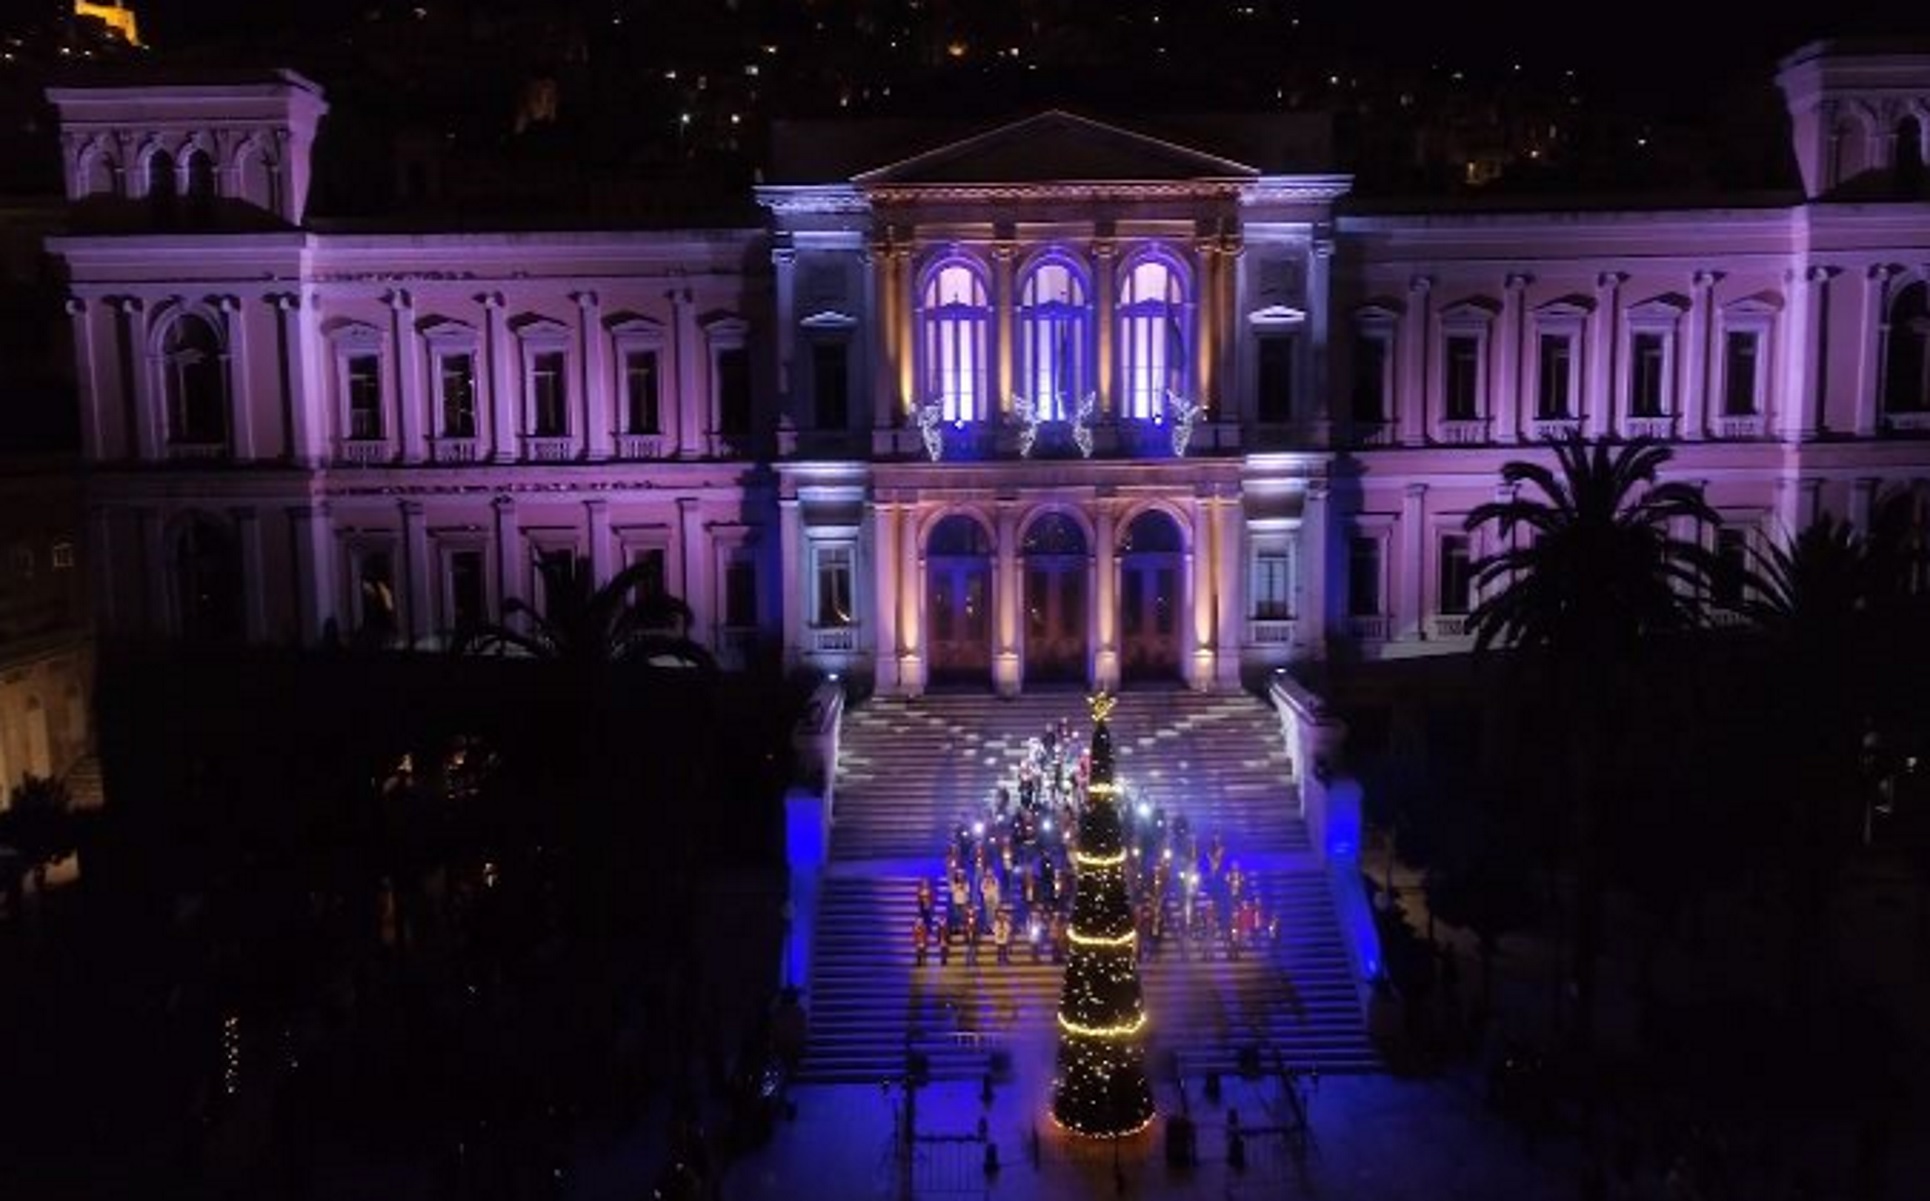 Χριστούγεννα στη Σύρο: Οι δύο όψεις του στολισμού σε Ερμούπολη και Άνω Σύρο